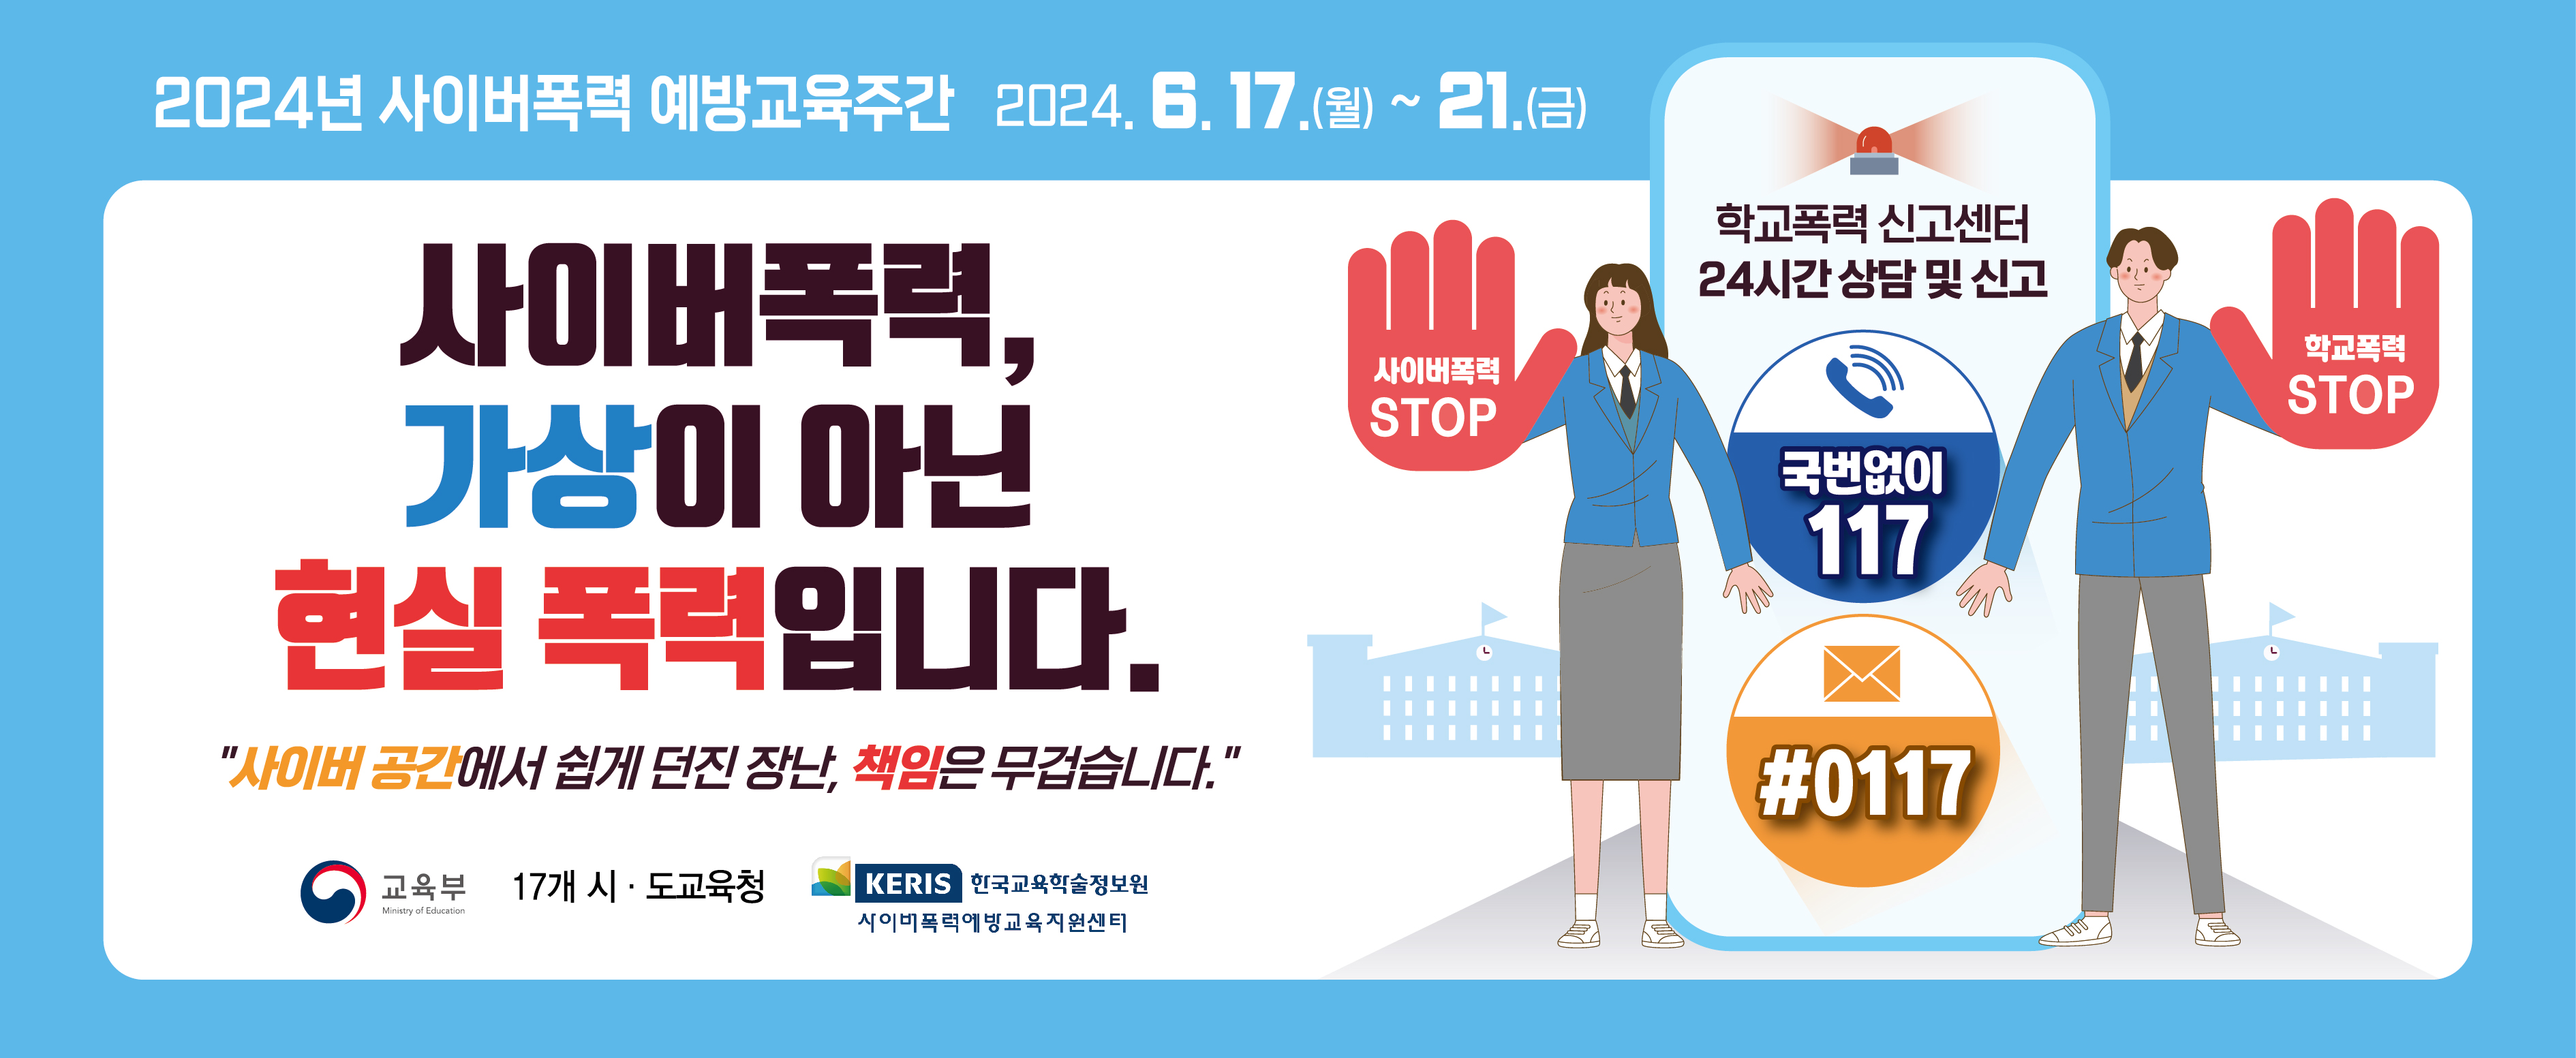 사이버폭력 예방교육주간 홍보 배너